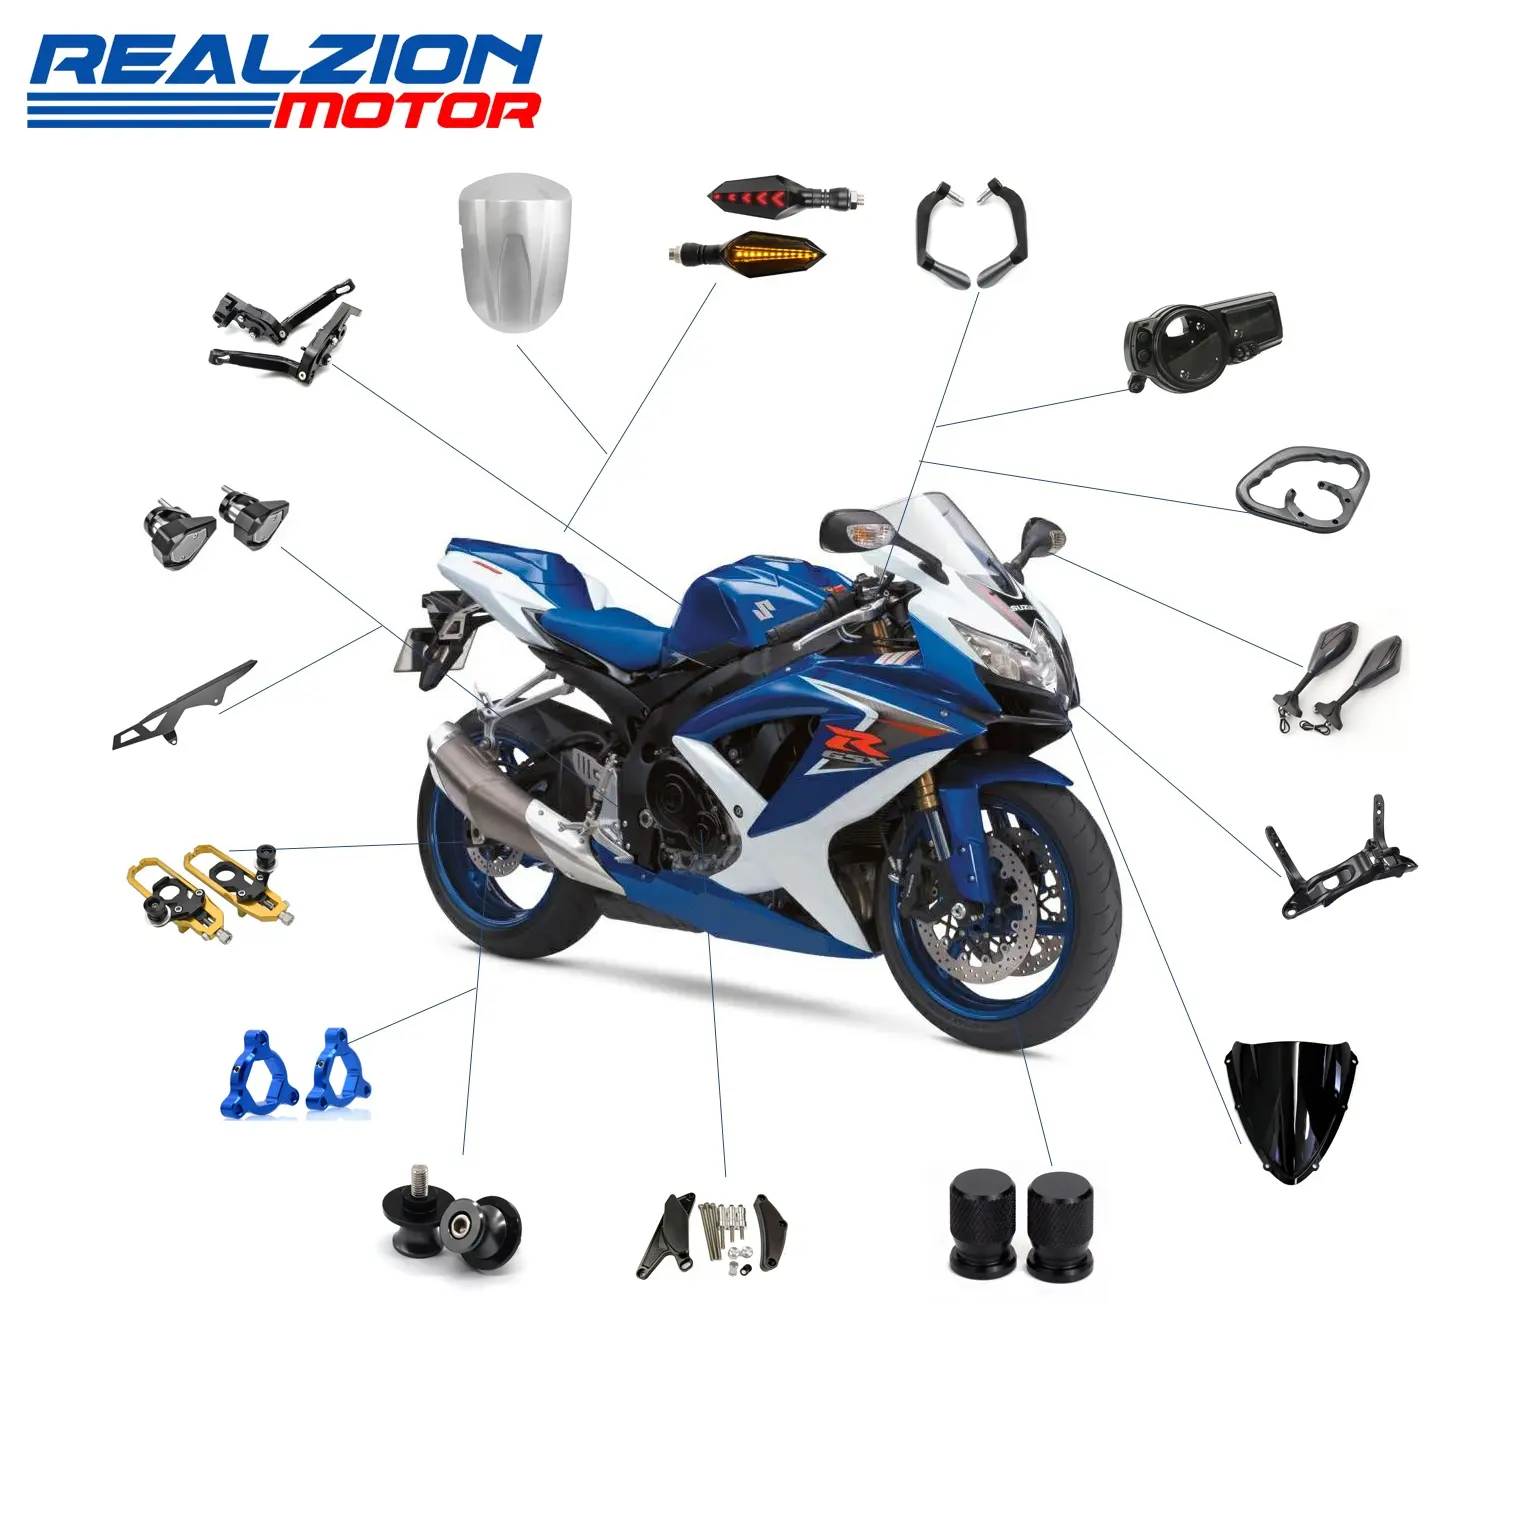 Запчасти для мотоциклов Realzion, оптовая продажа, аксессуары, модификация, мотоцикл, мото, внедорожник, части кузова, запасные части для Suzuki